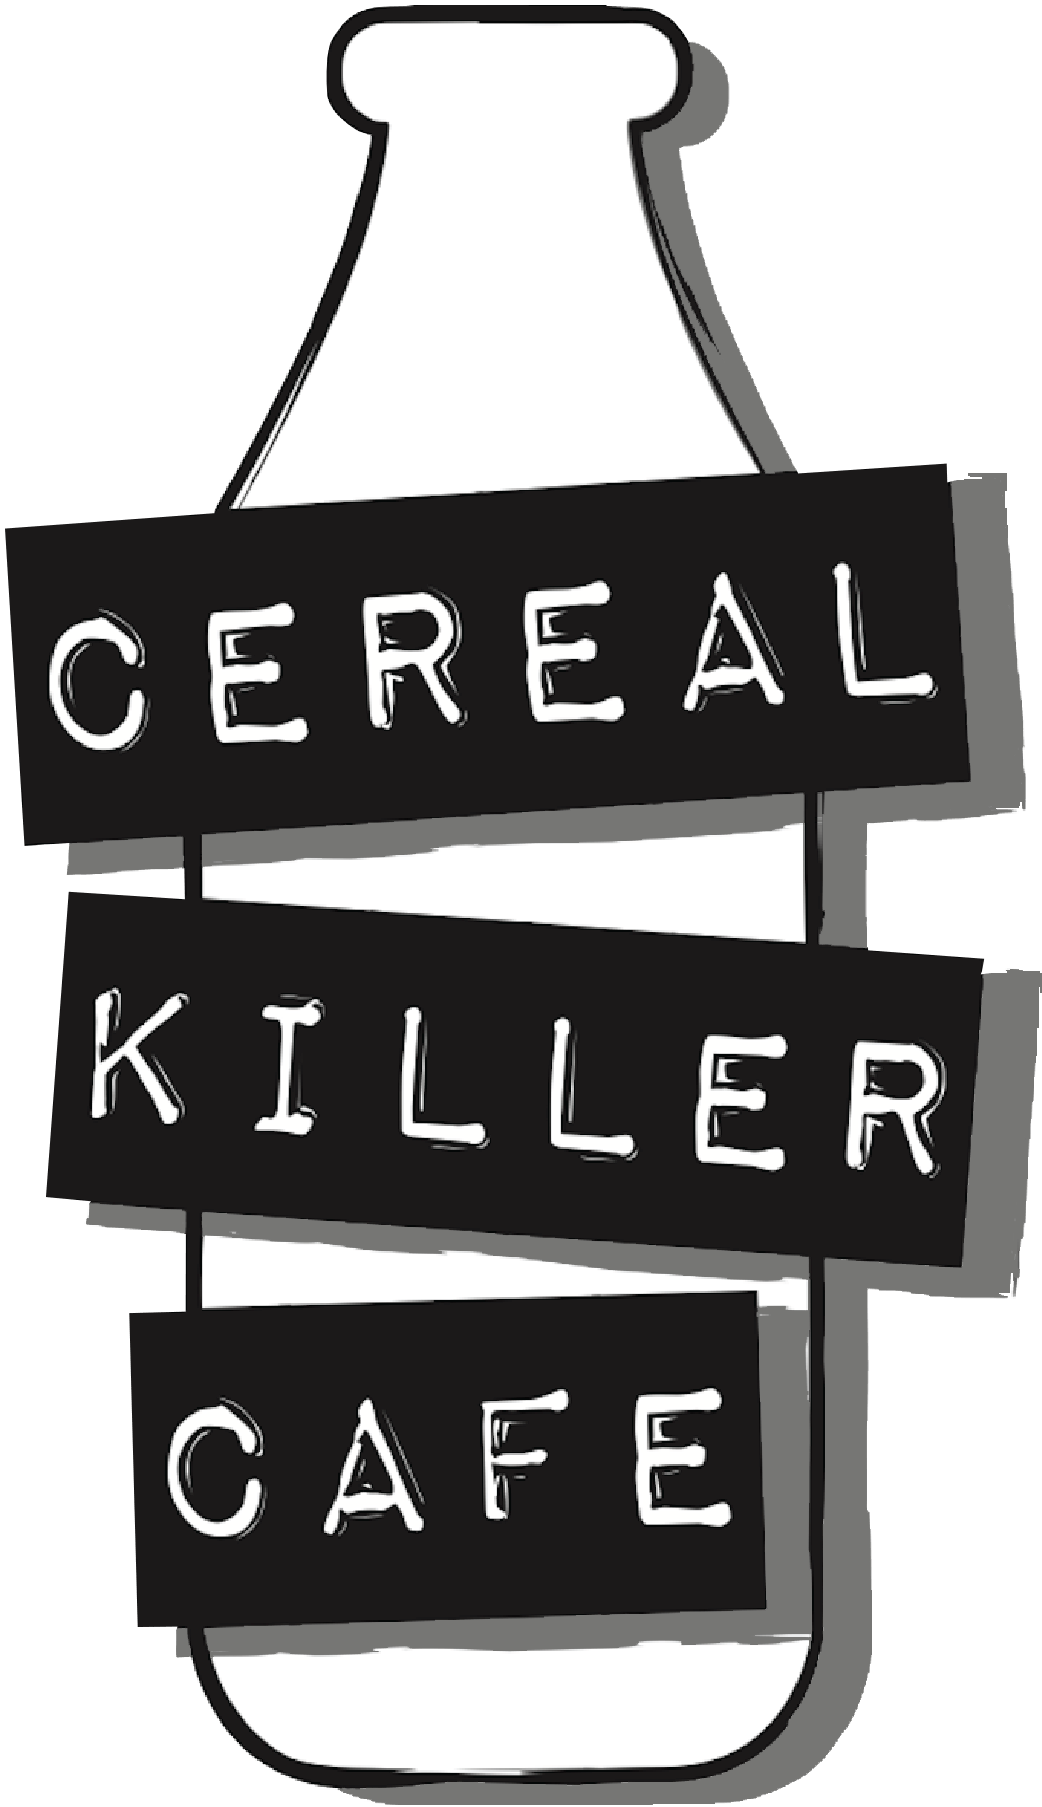 All Cafe Logo - Cereal Killer Cafe